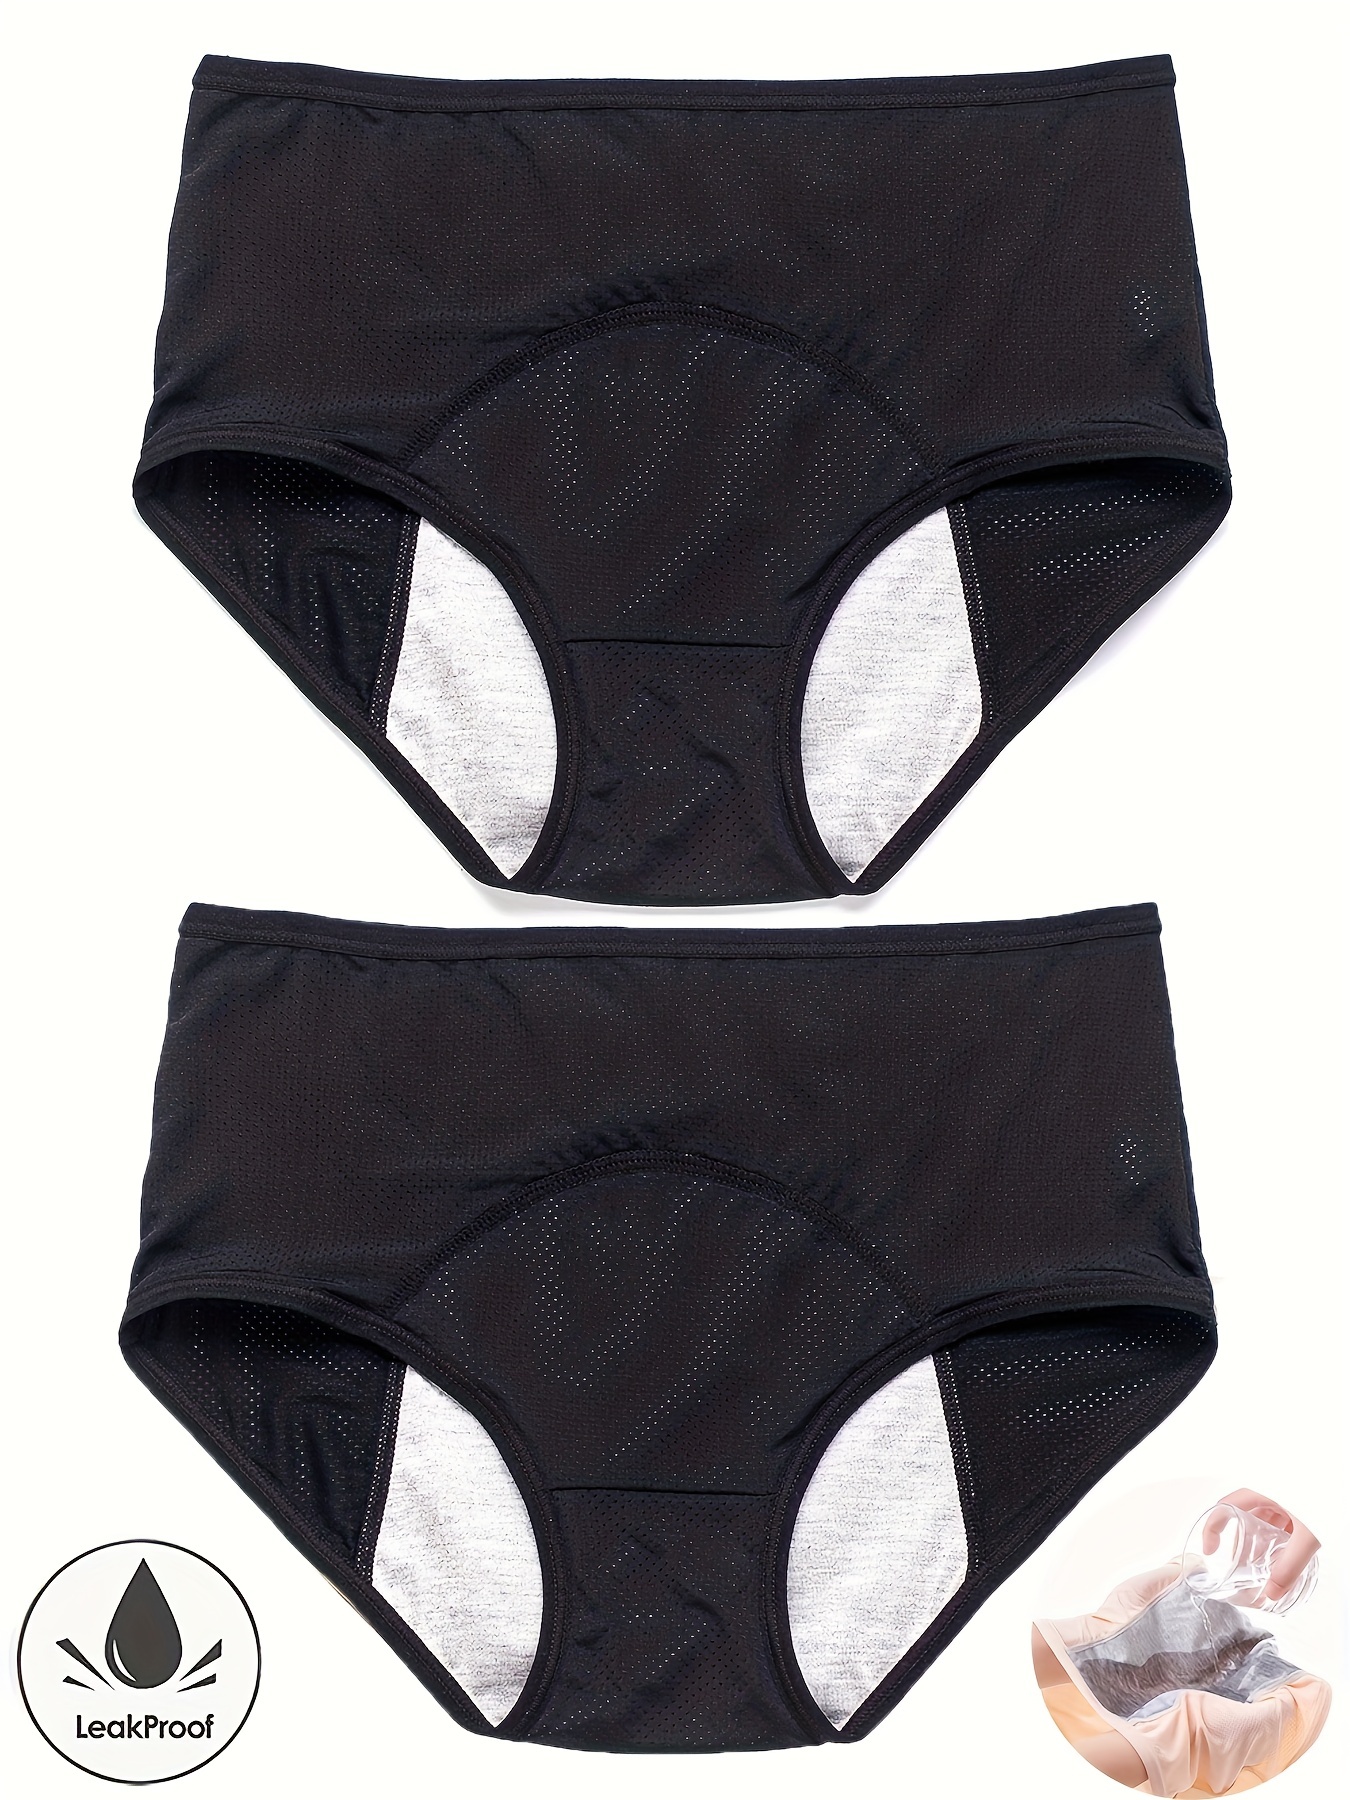  Panties Variety Pack Leak Proof Underwear For Women